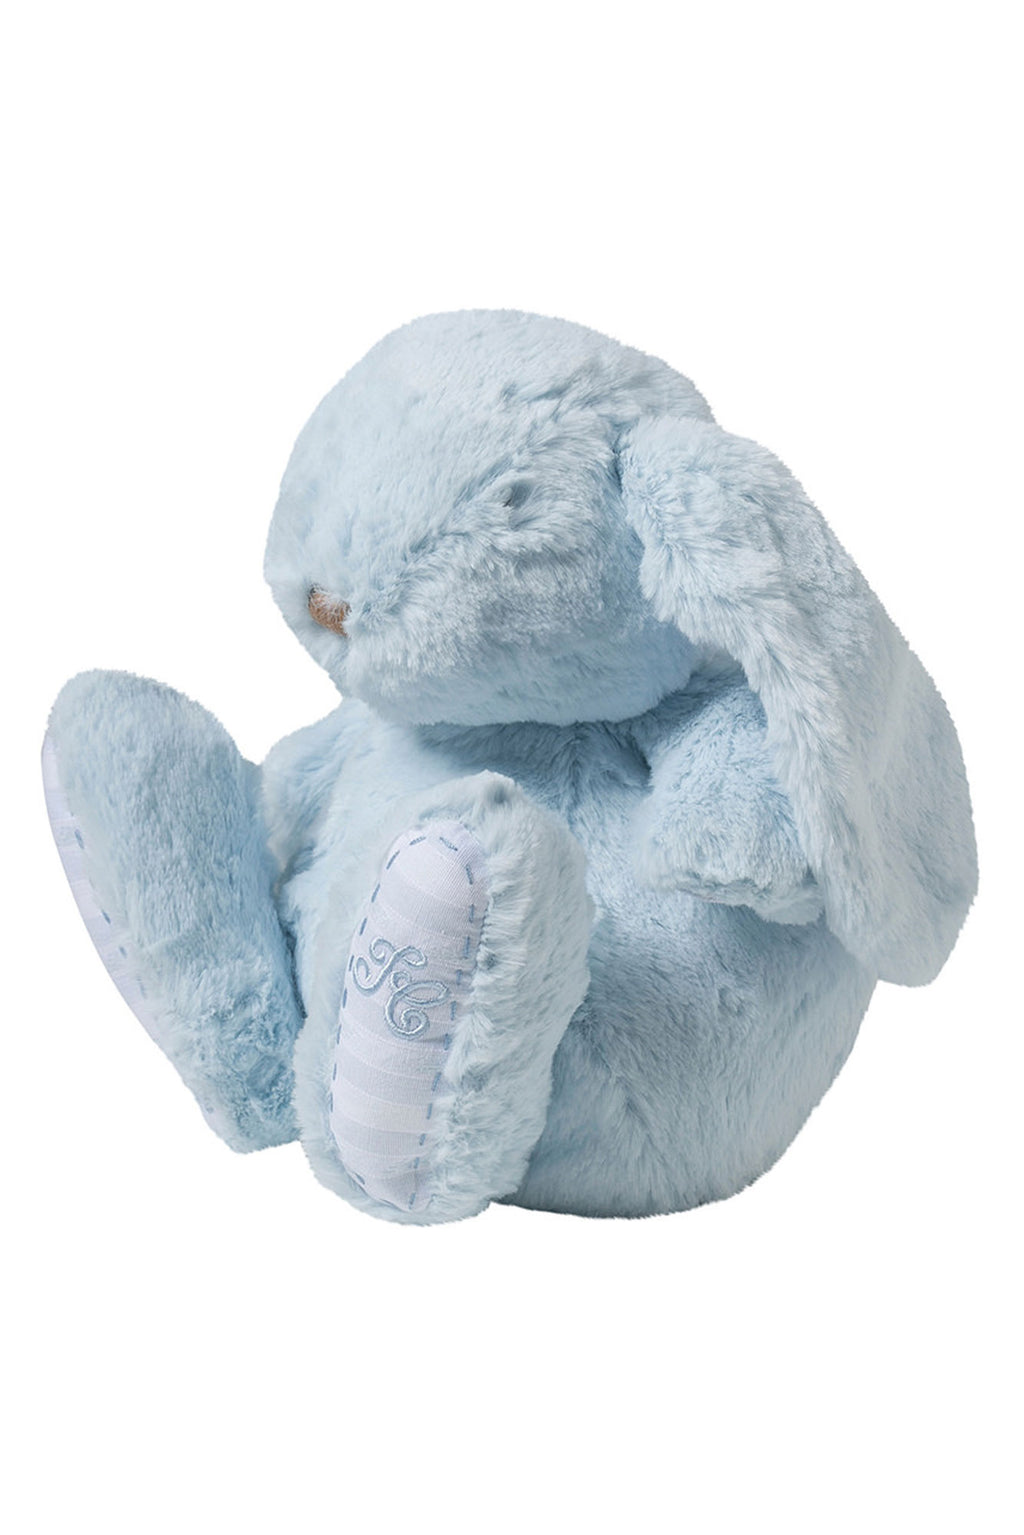 Augustin el conejo - 25 cm Azul cielo